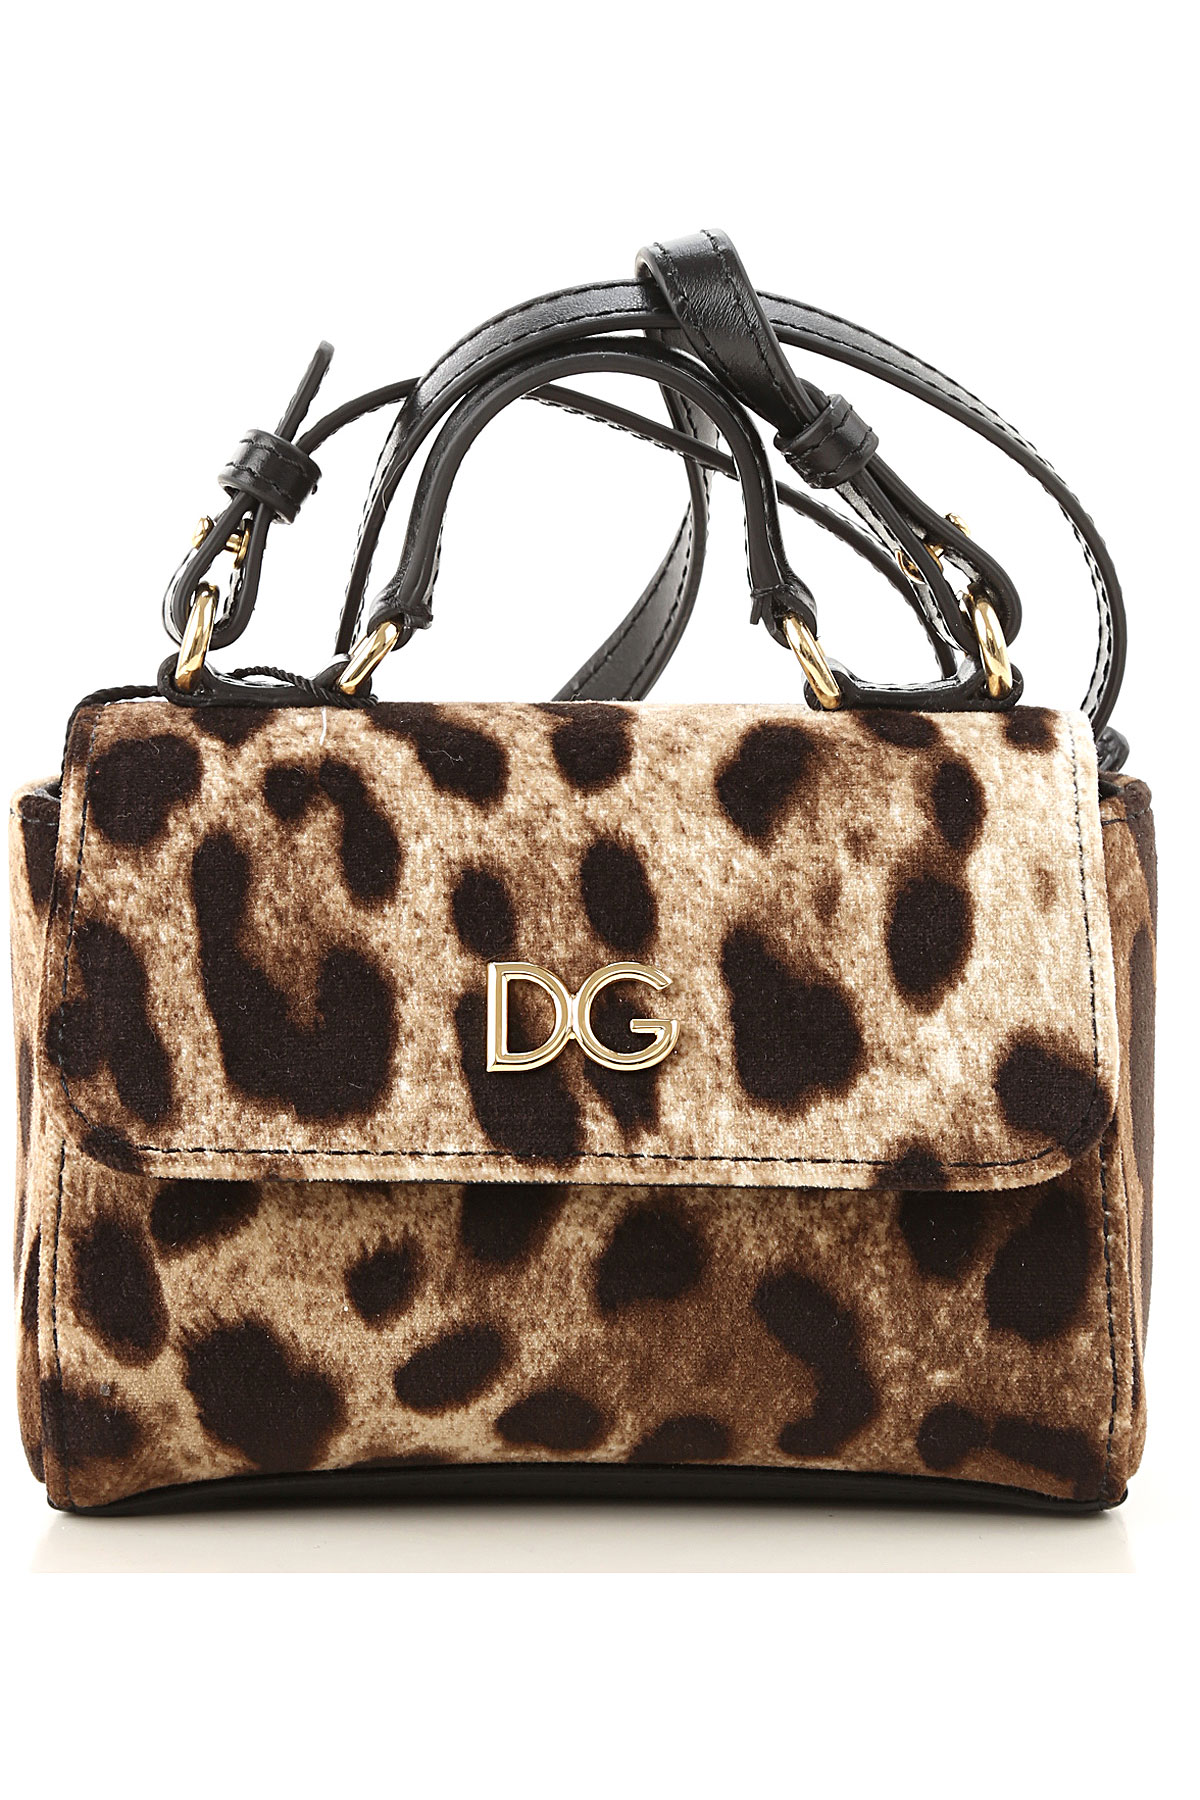 Dolce & Gabbana Handtasche für Mädchen Günstig im Sale, Leopardenfarbig, Baumwolle, 2017